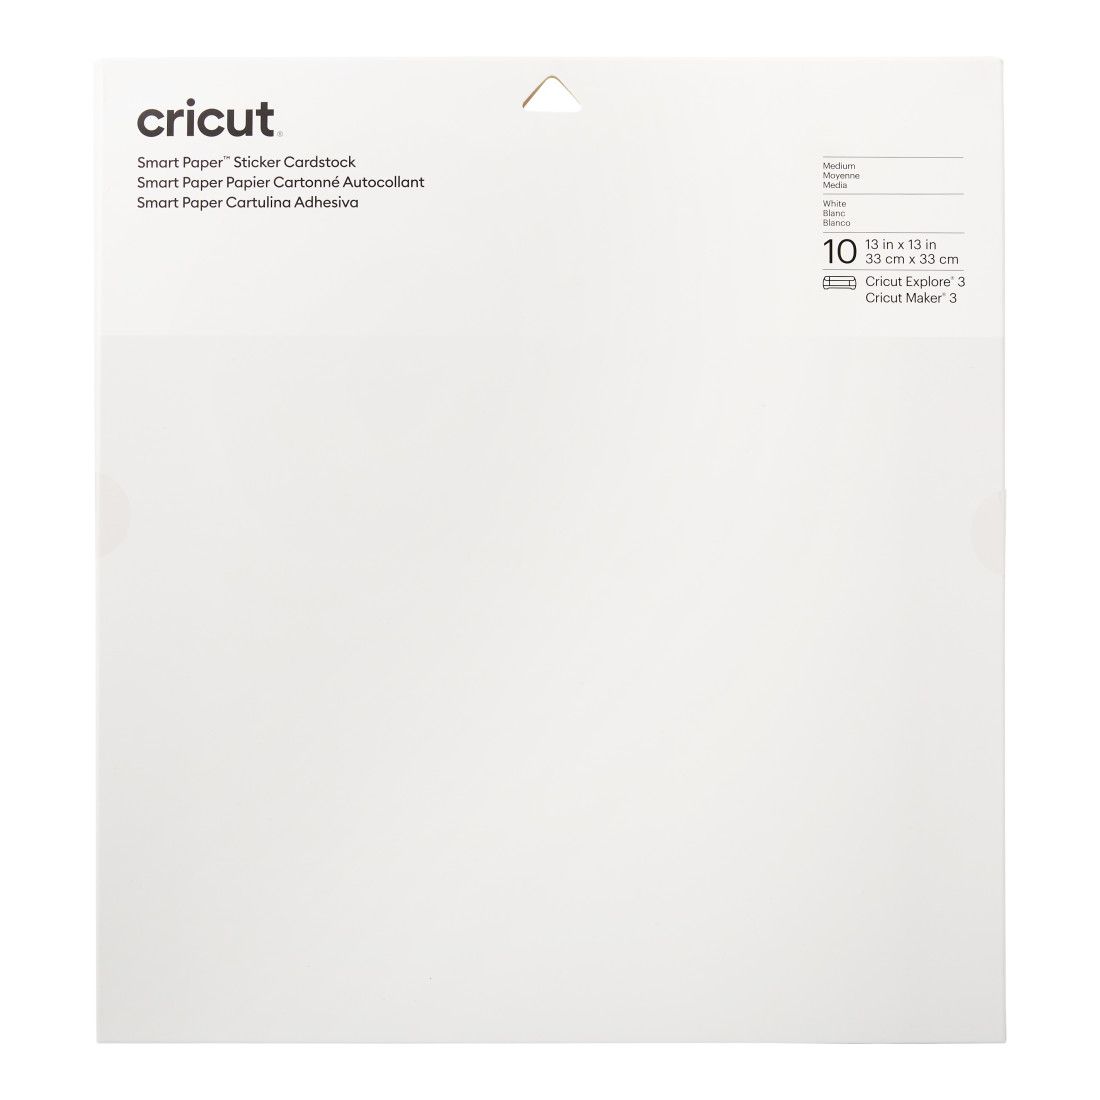 Cricut Smart Paper Sticker Cardstock (White)